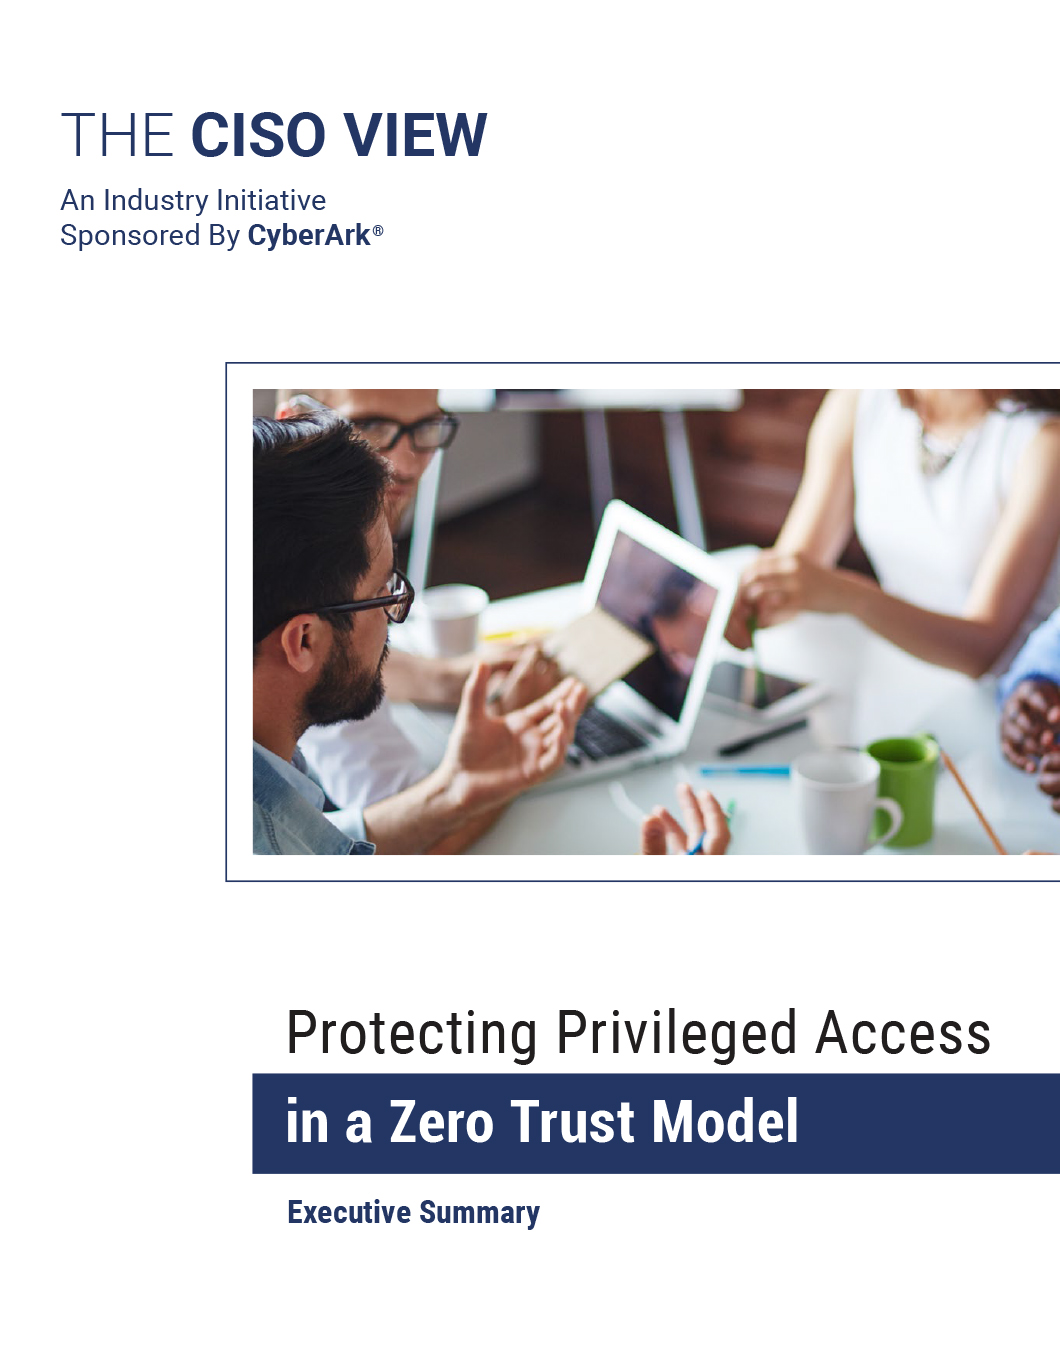 2021 CISO VIEW - Zero Trust